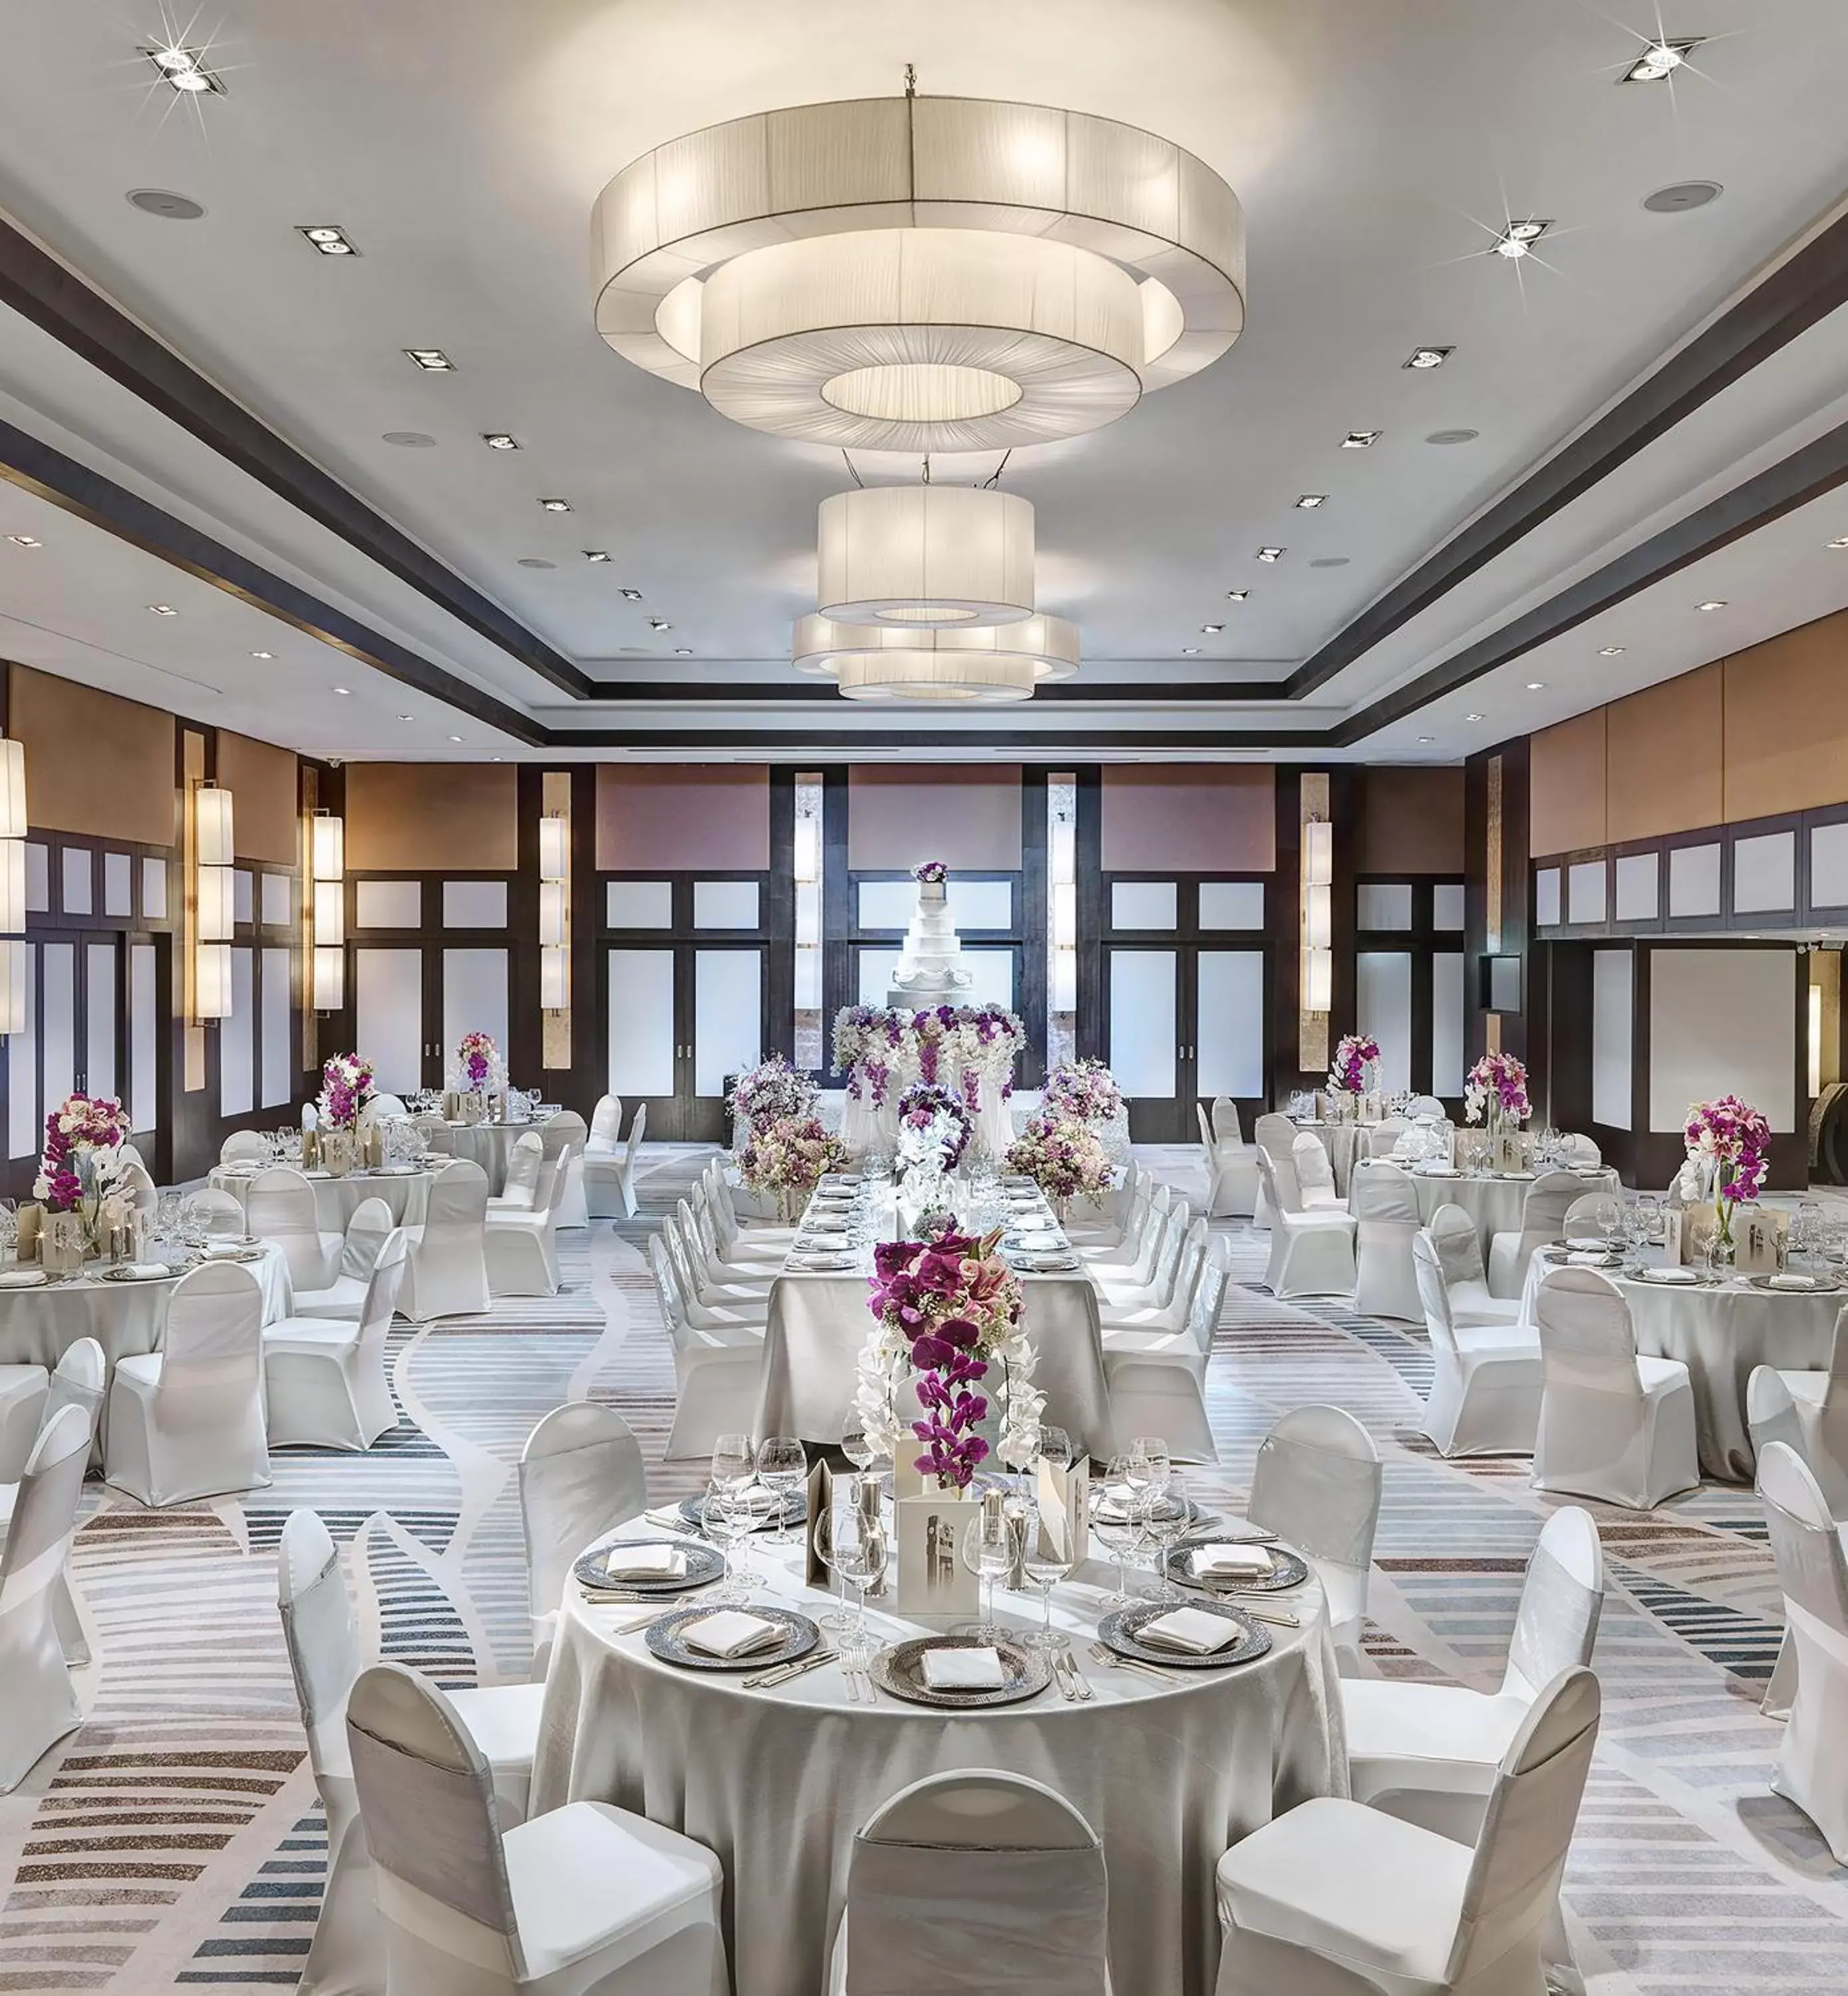 Banquet/Function facilities, Banquet Facilities in Banyan Tree Bangkok - SHA Extra Plus Certified